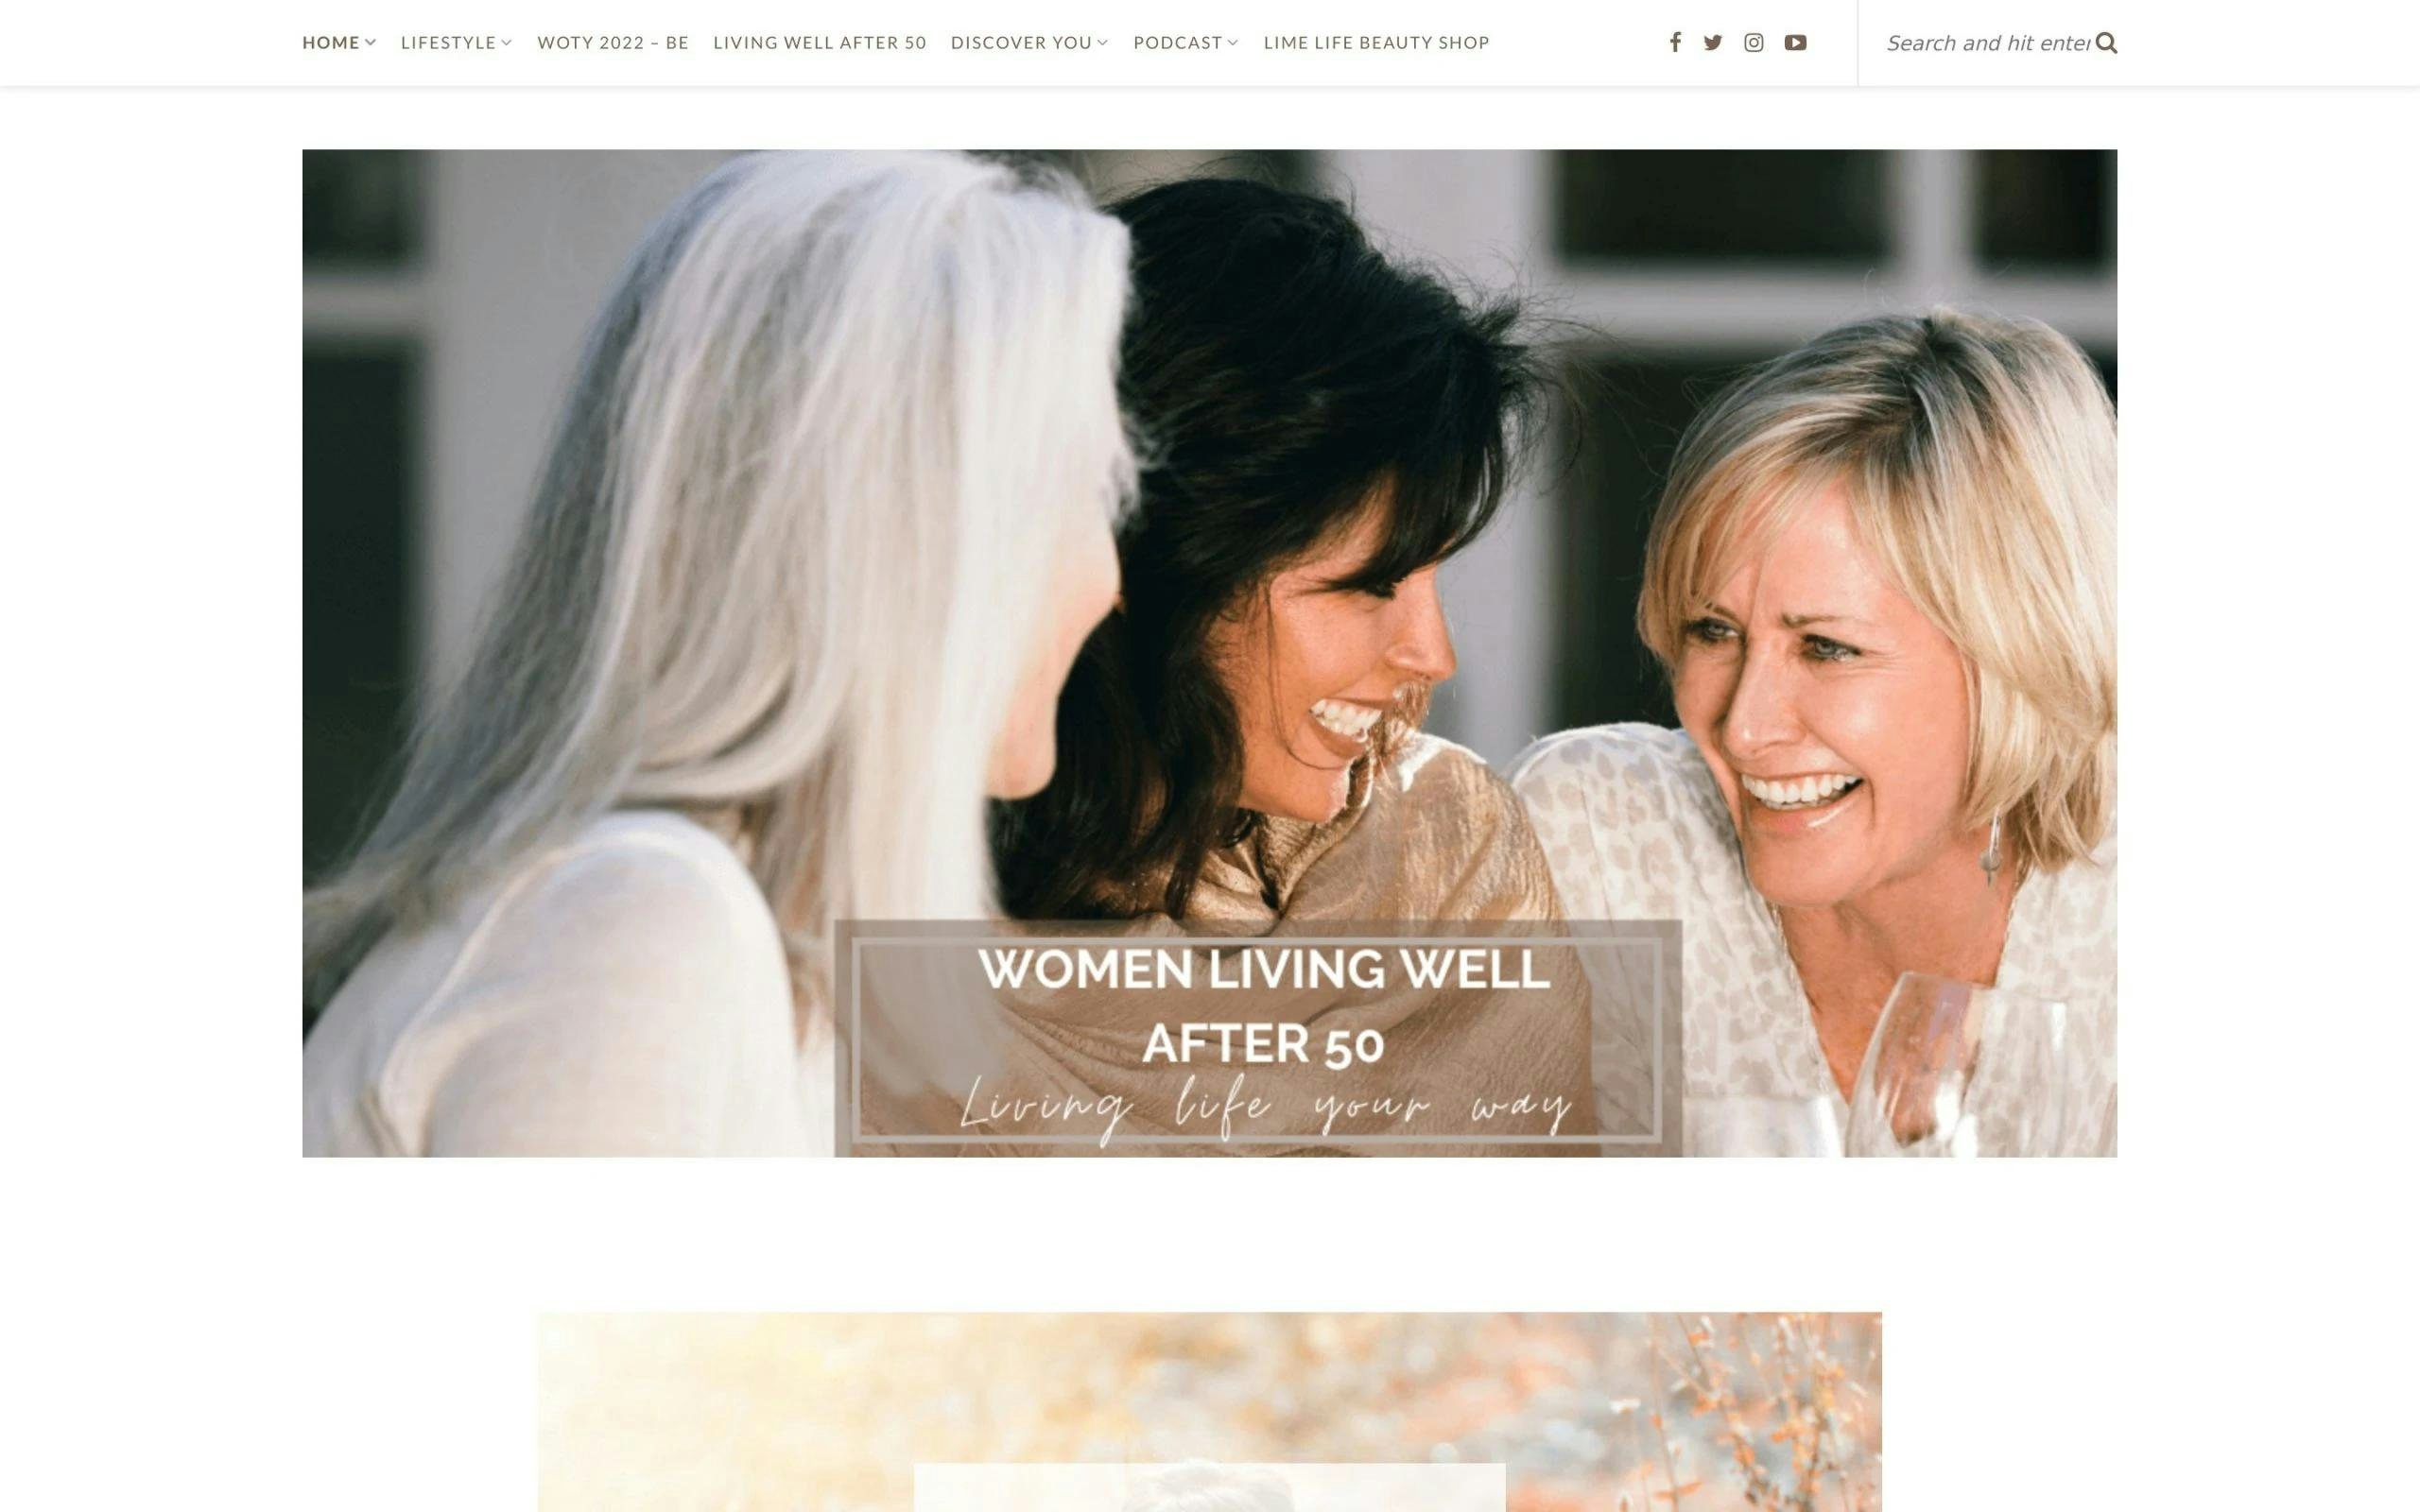 Women Living Well After 50 blog for women